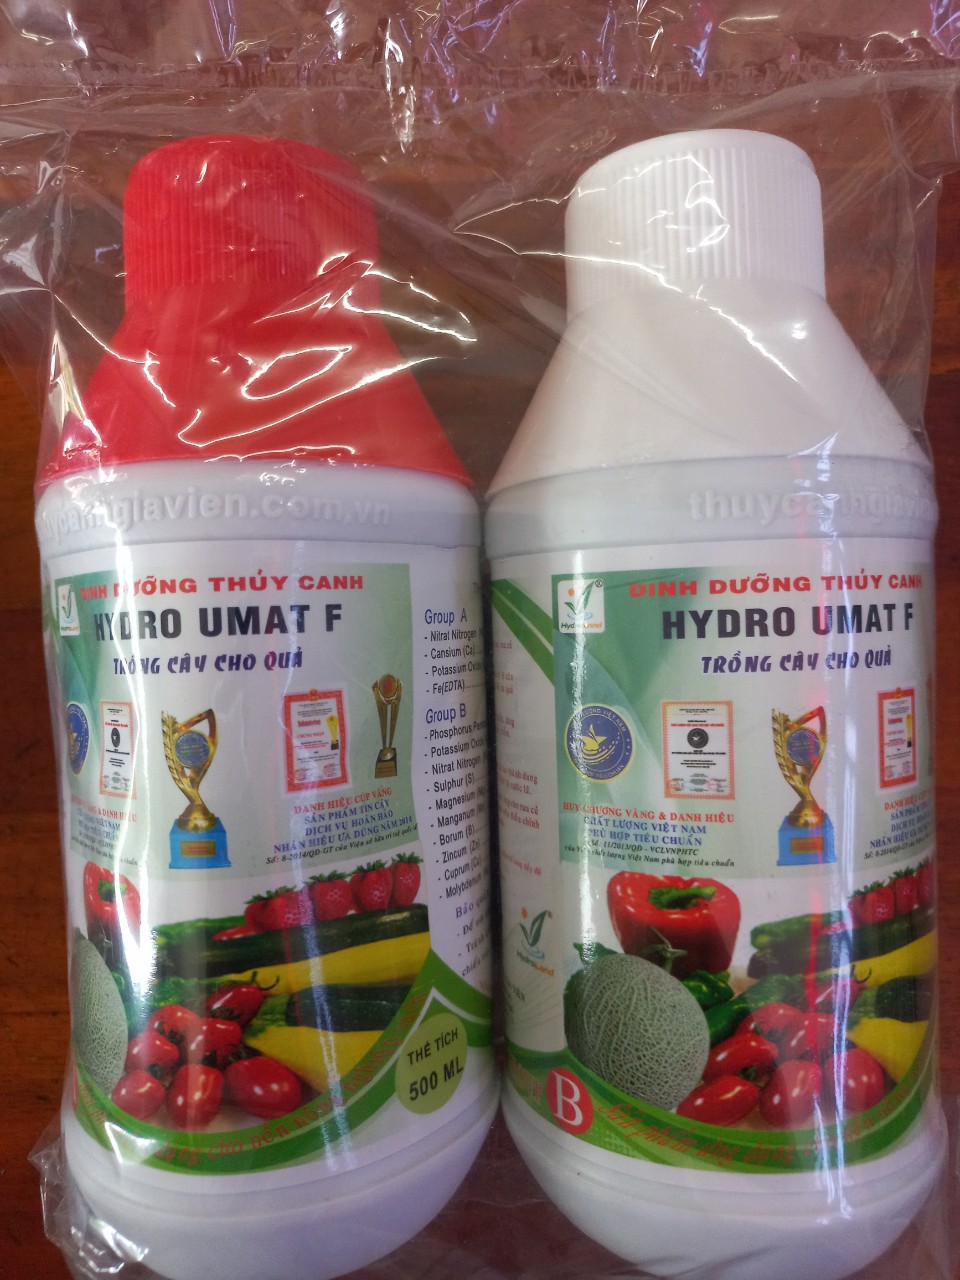 Dinh dưỡng Hydro Umat F